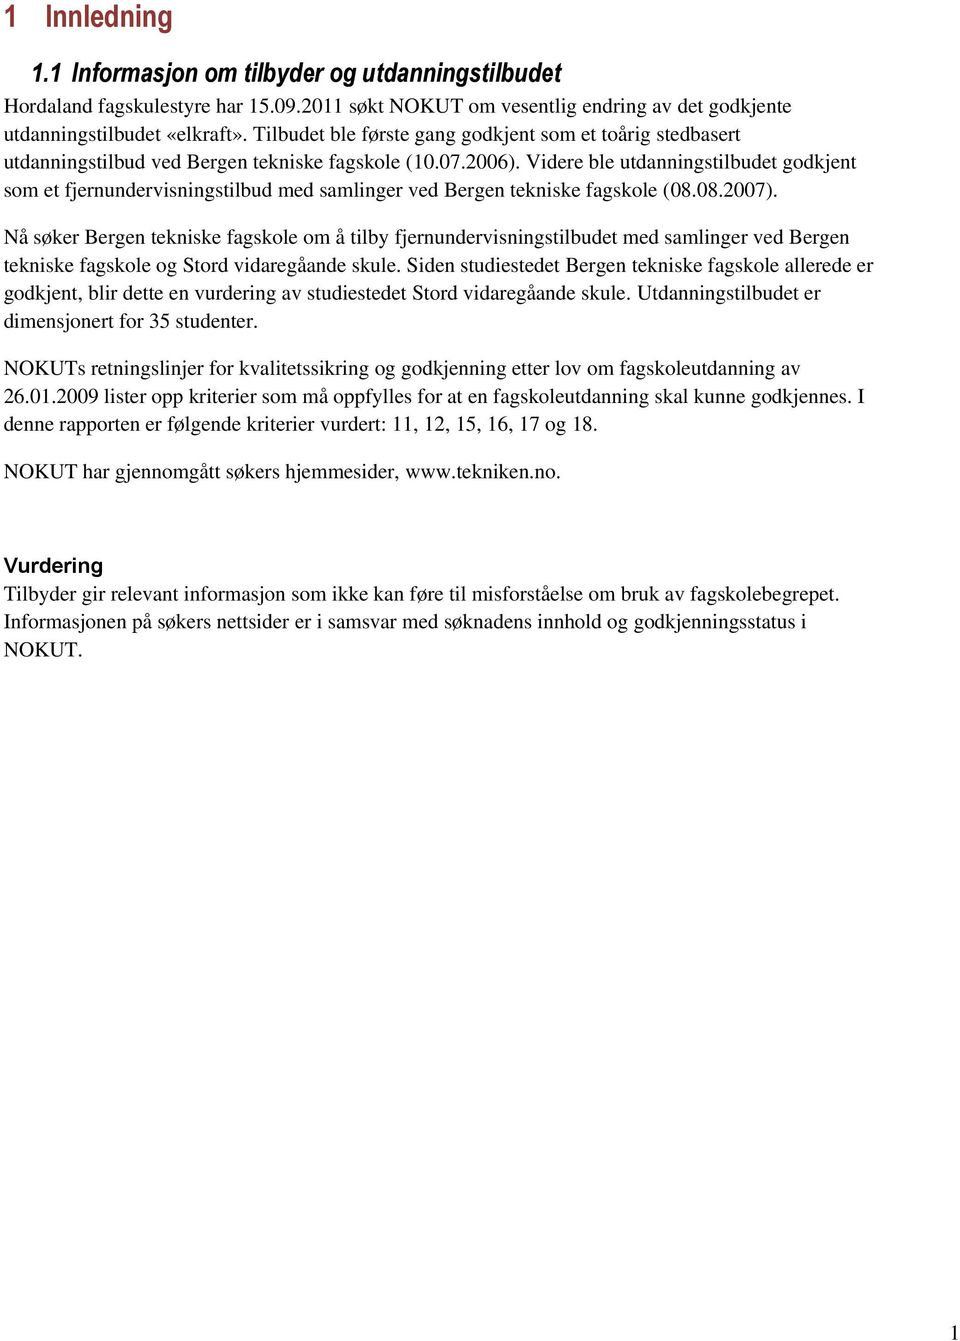 Videre ble utdanningstilbudet godkjent som et fjernundervisningstilbud med samlinger ved Bergen tekniske fagskole (08.08.2007).